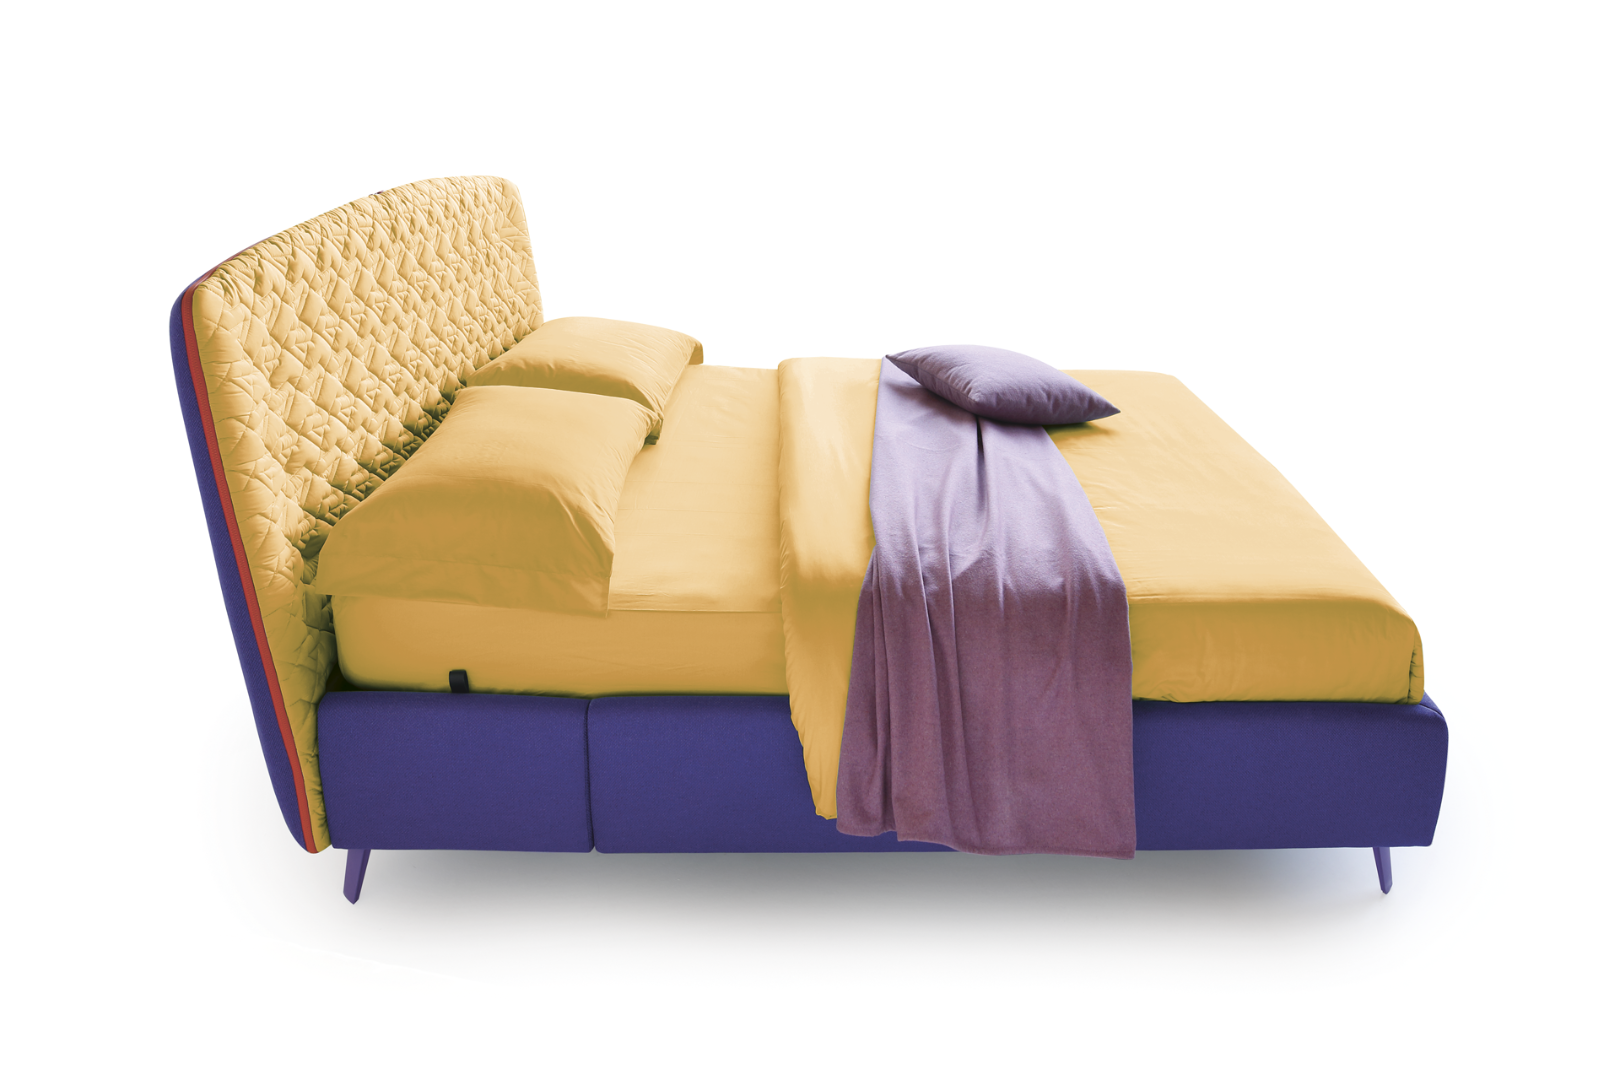 Кровать Cama — ₽, купить у официального дилера Nicolettihome